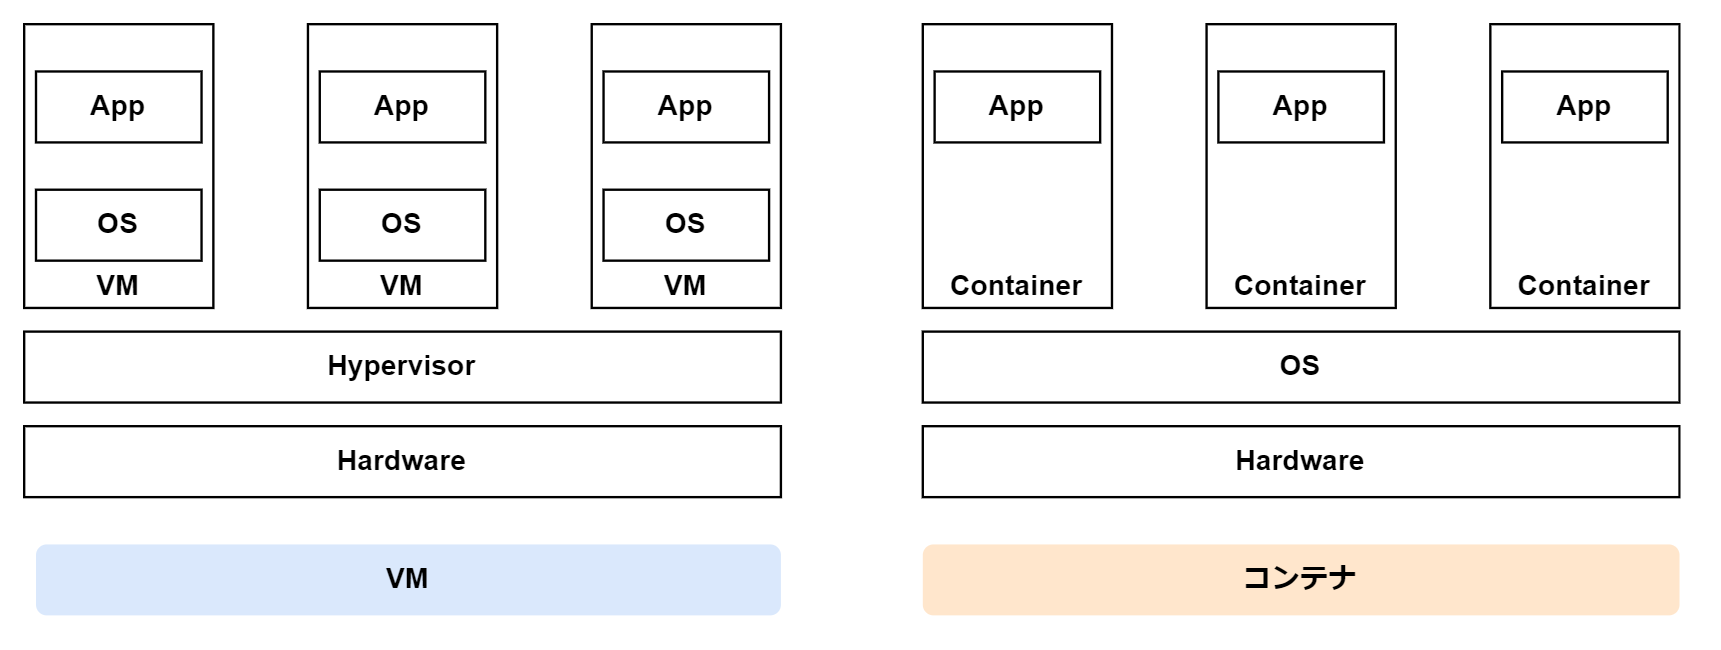 vm-vs-container